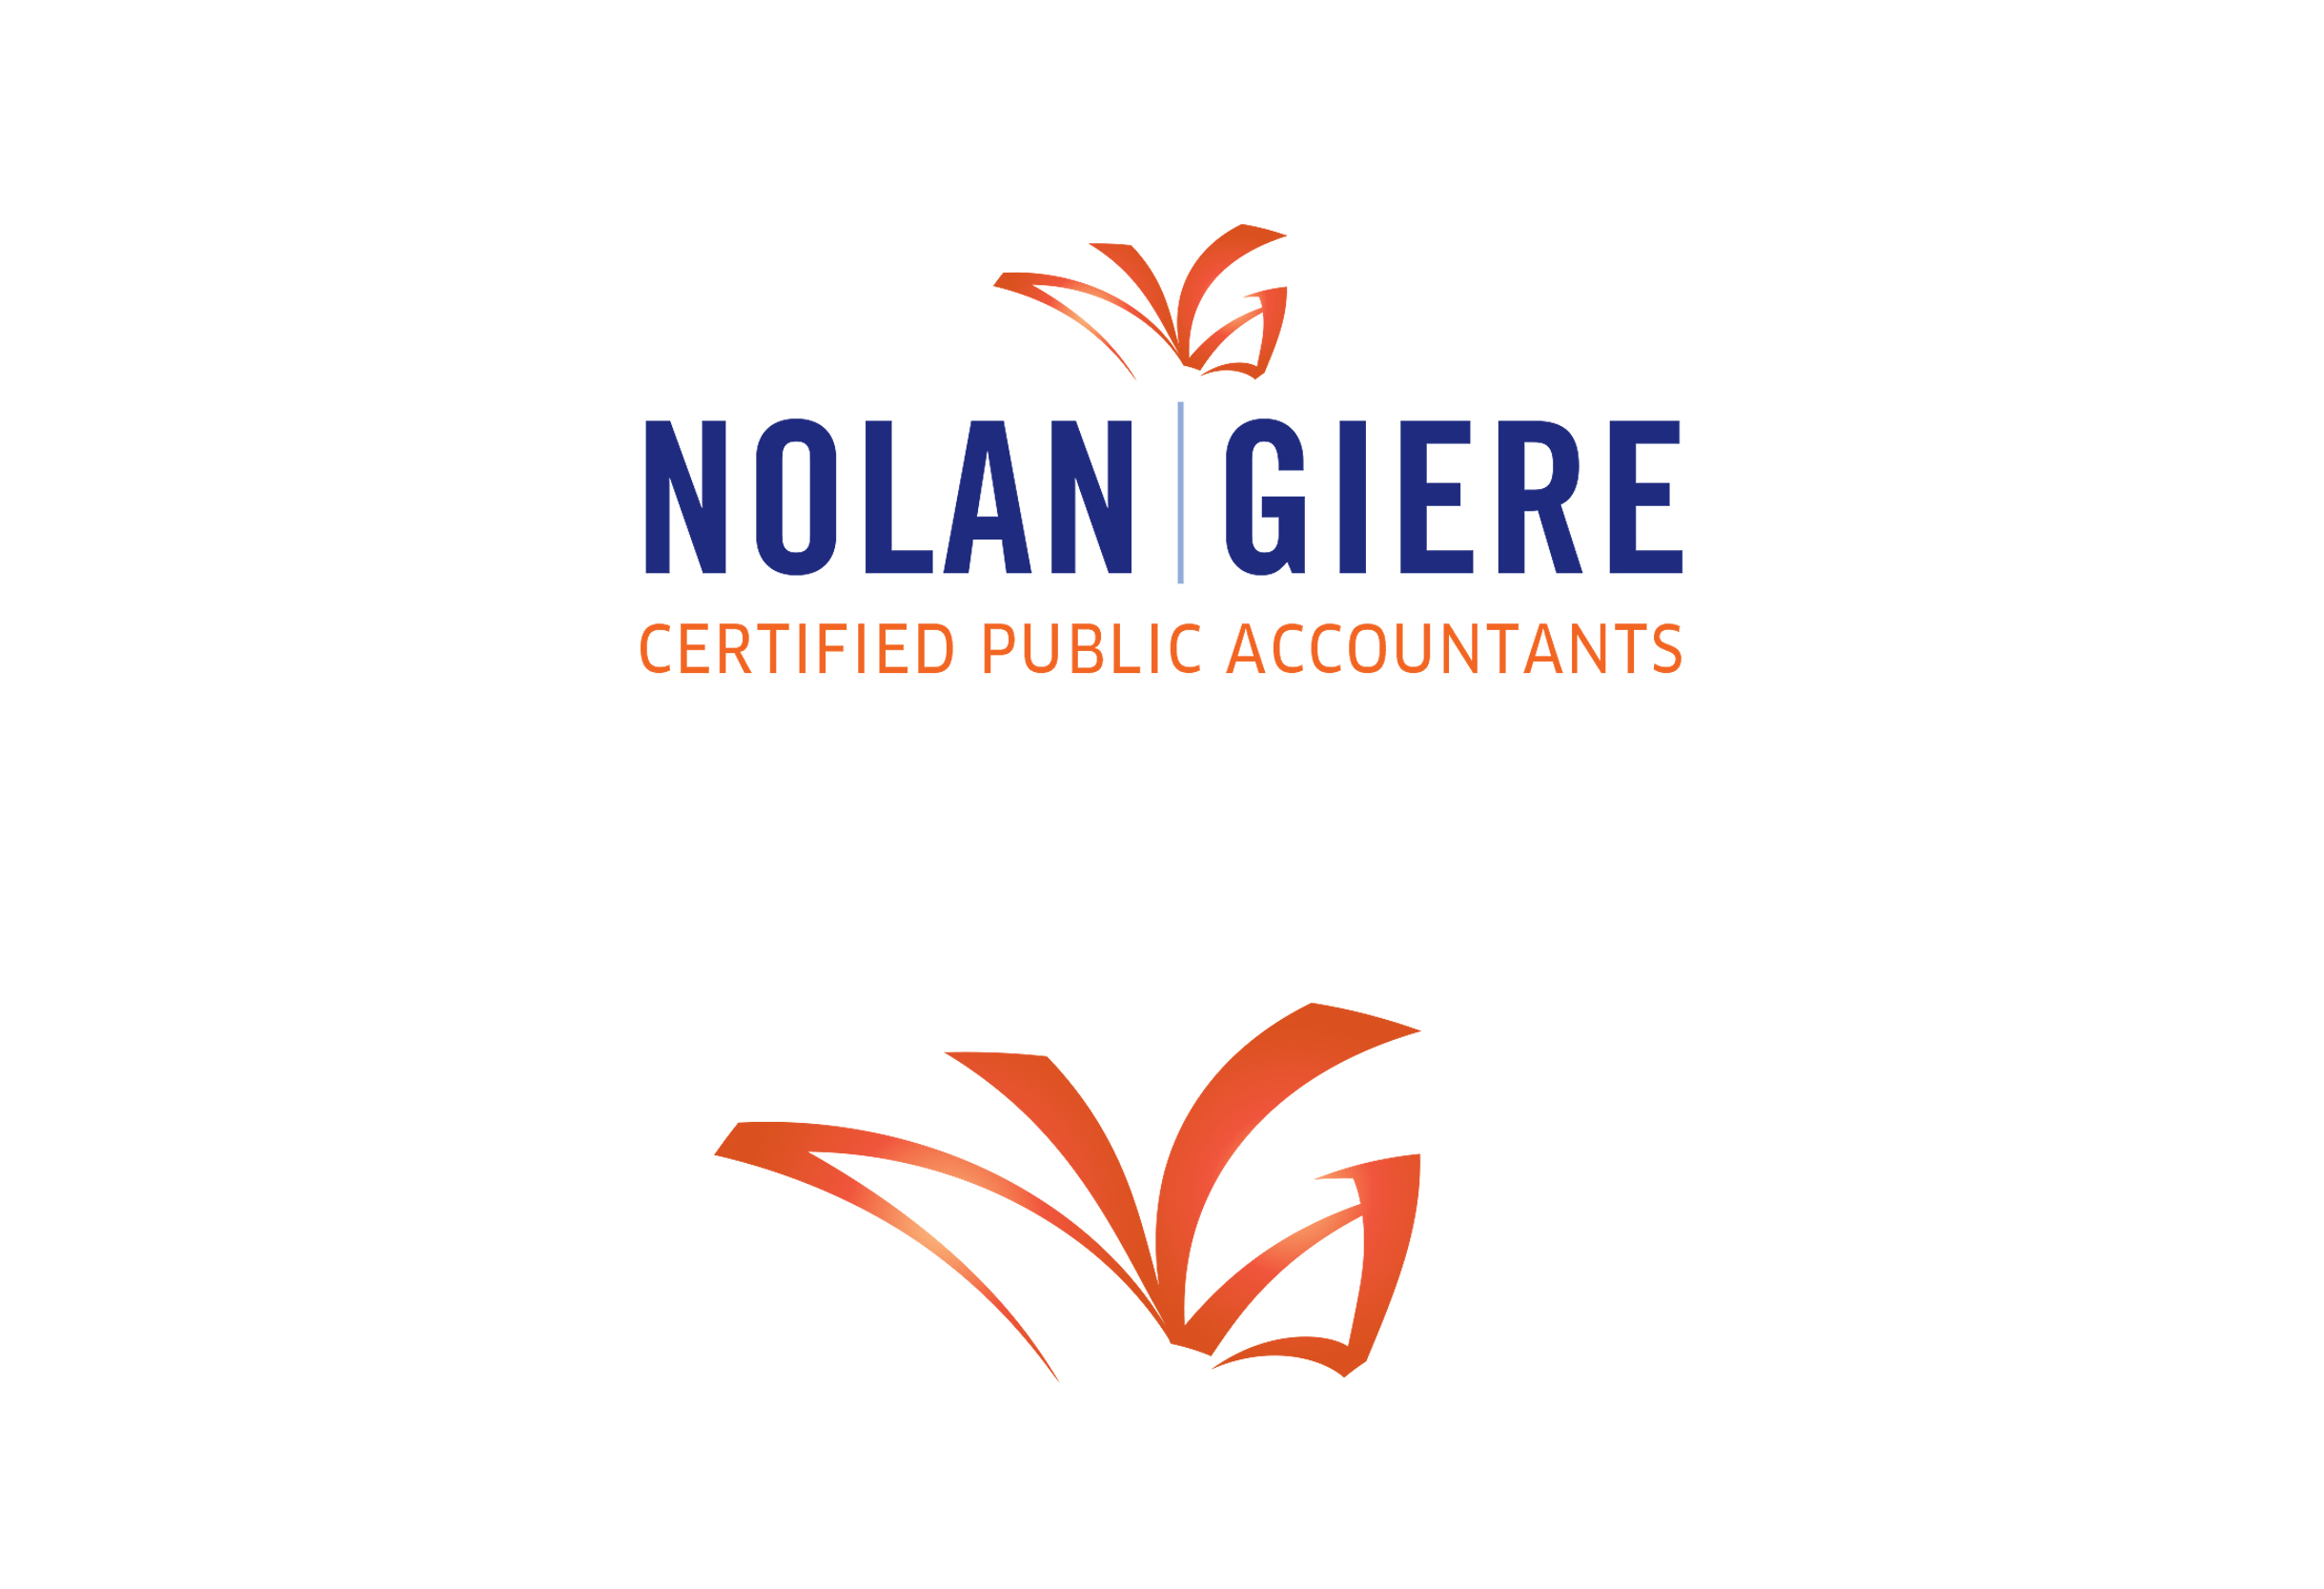  Company Branding: Nolan Giere CPAs 